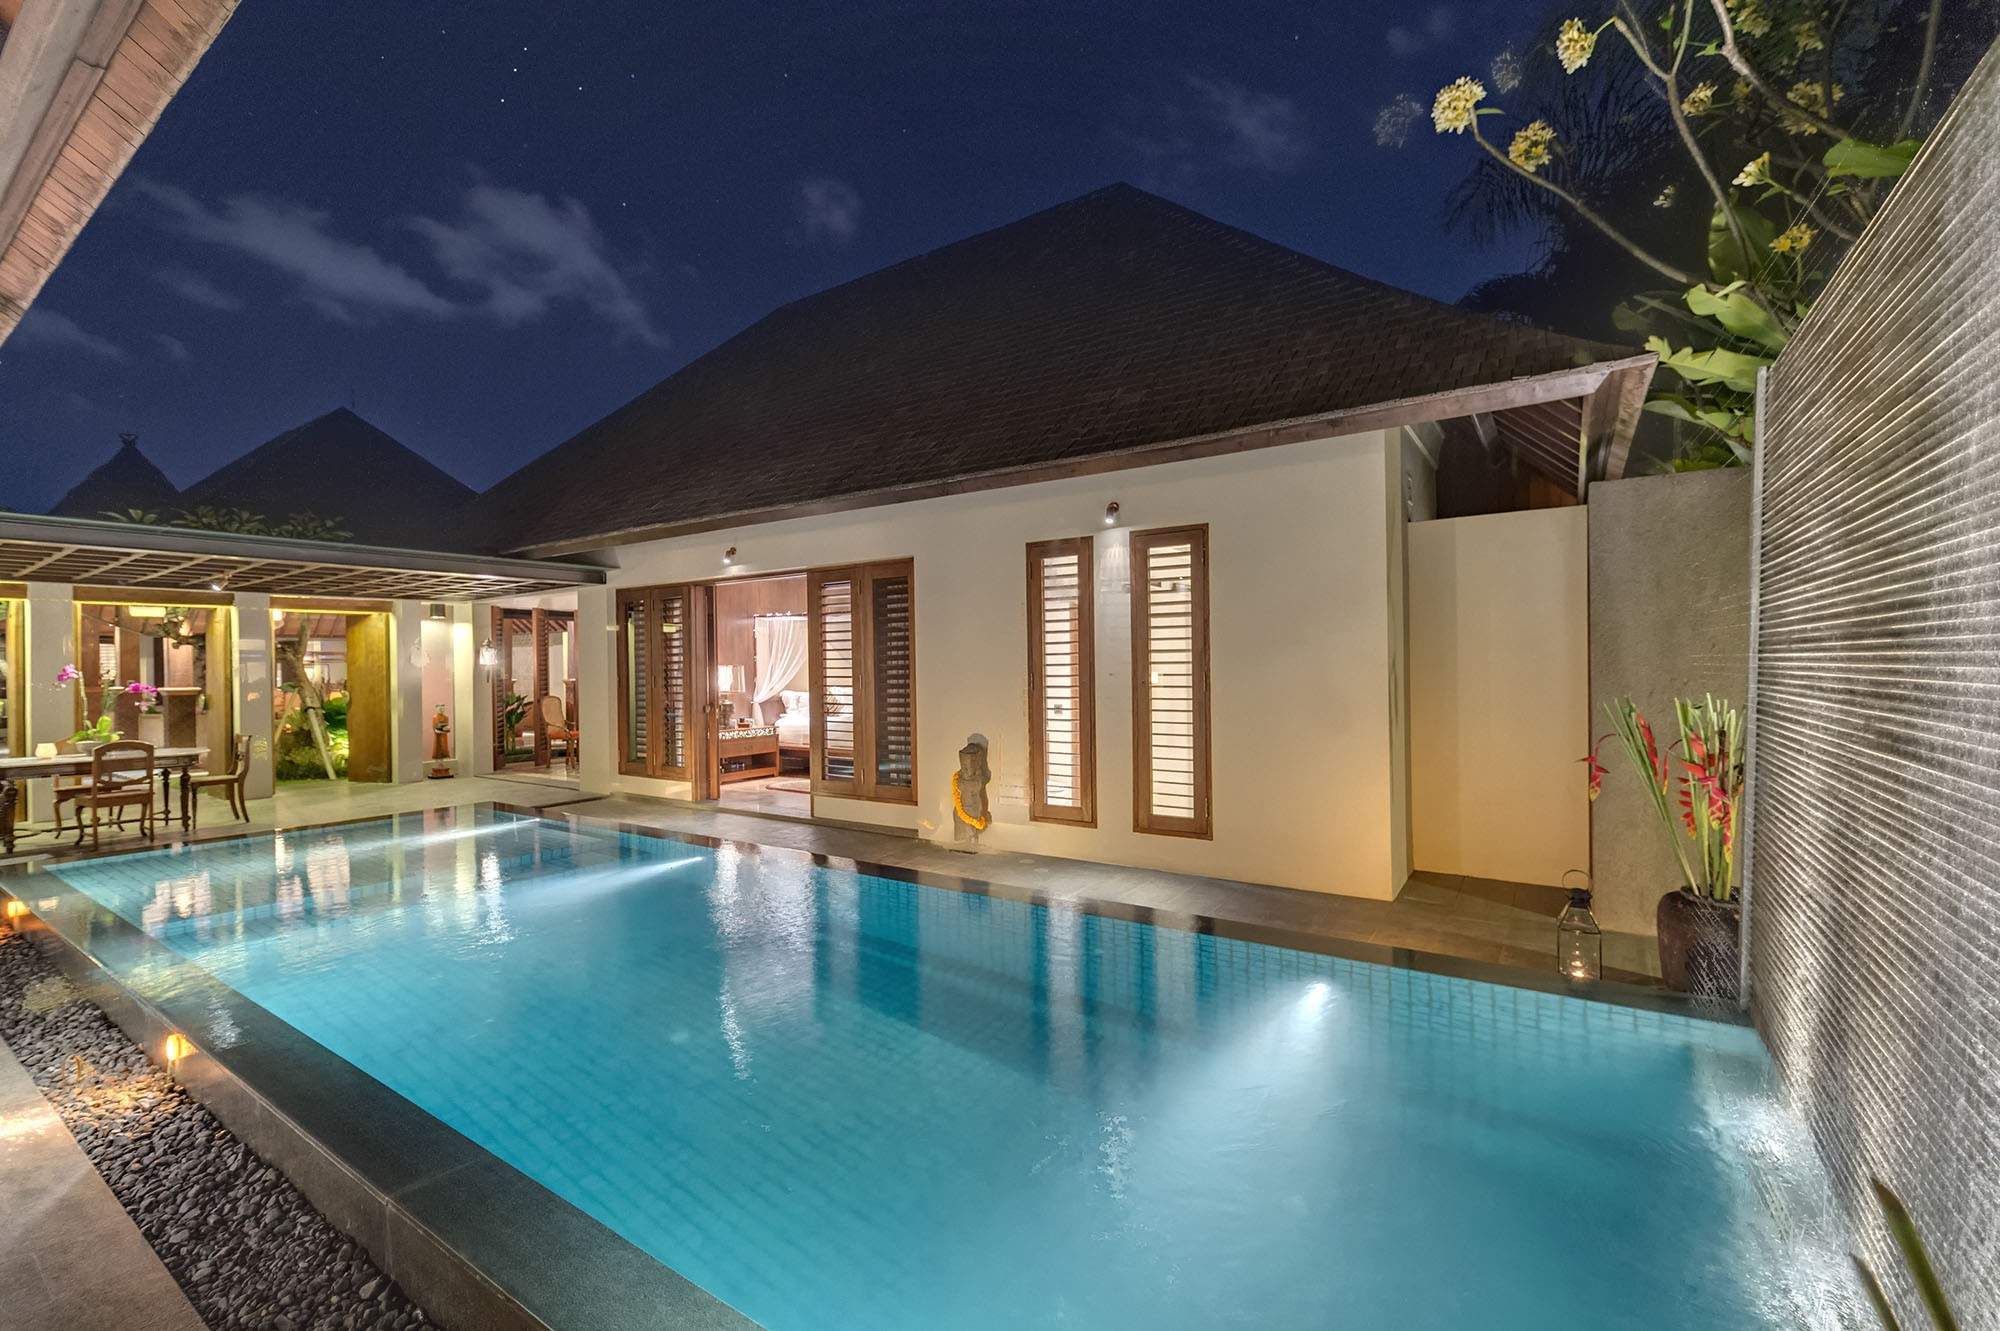 Rent villa Corretta, Indonesia, Bali, Seminjak | Villacarte